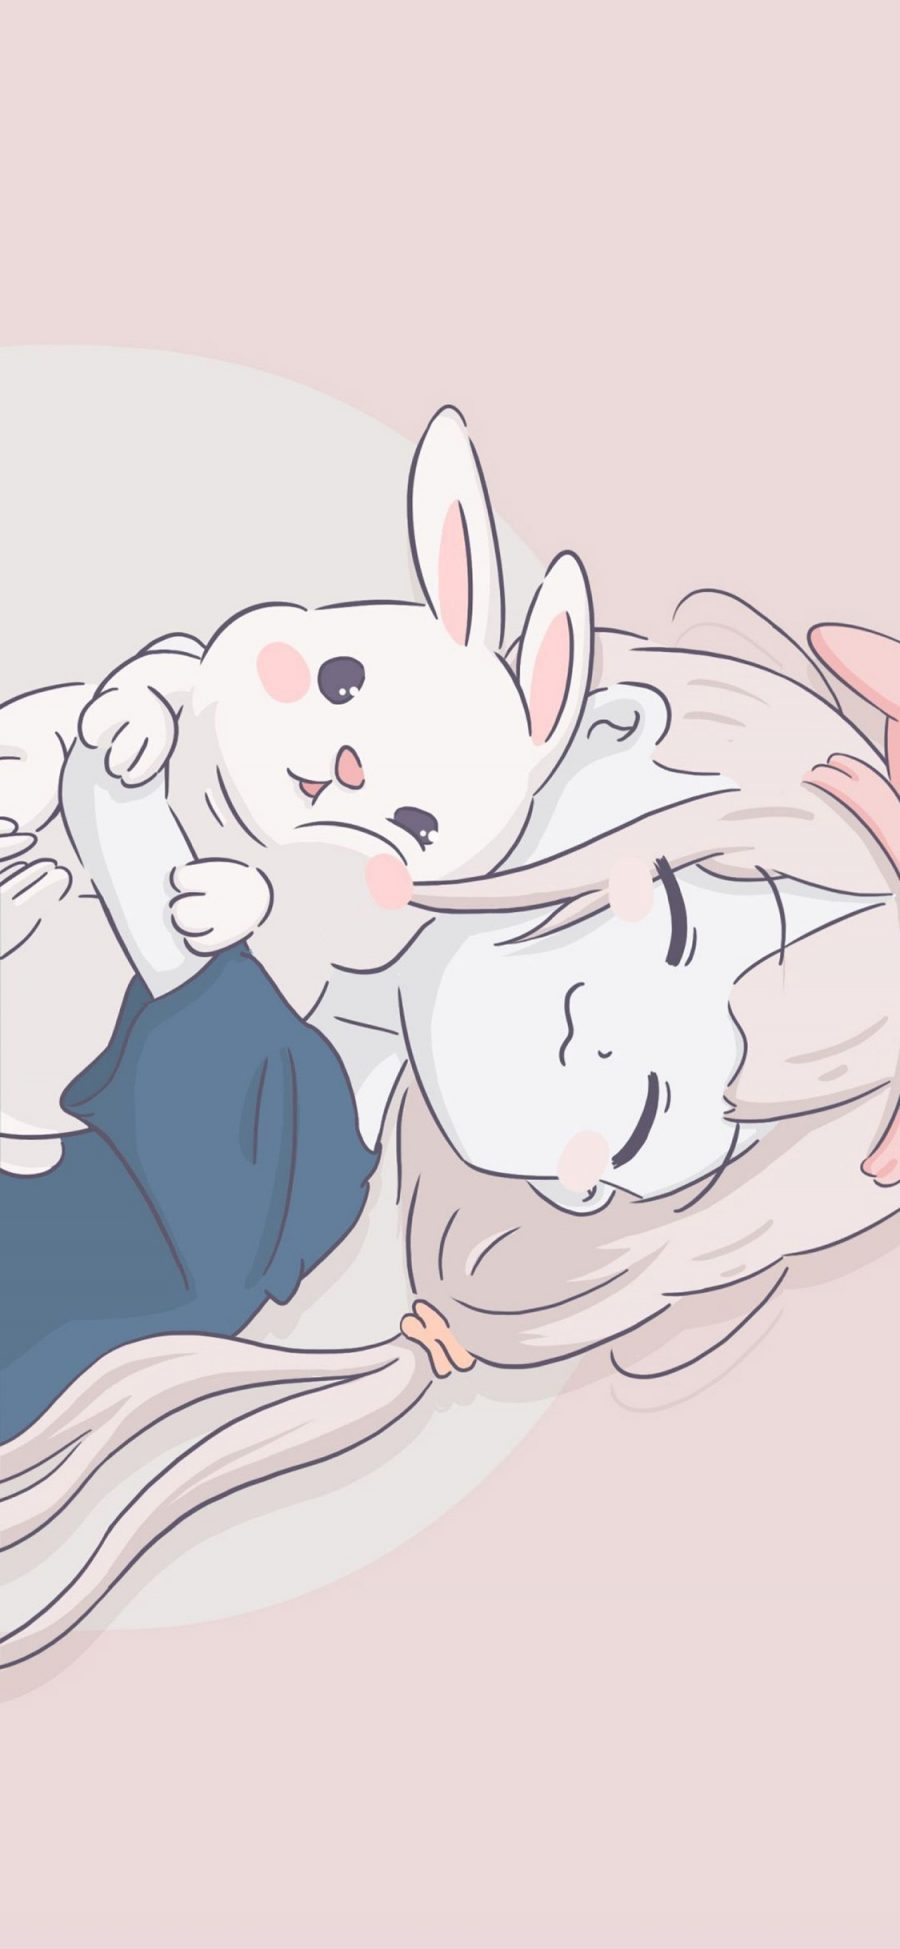 [2436×1125]卡通 萝莉 兔子 睡觉 可爱 苹果手机动漫壁纸图片